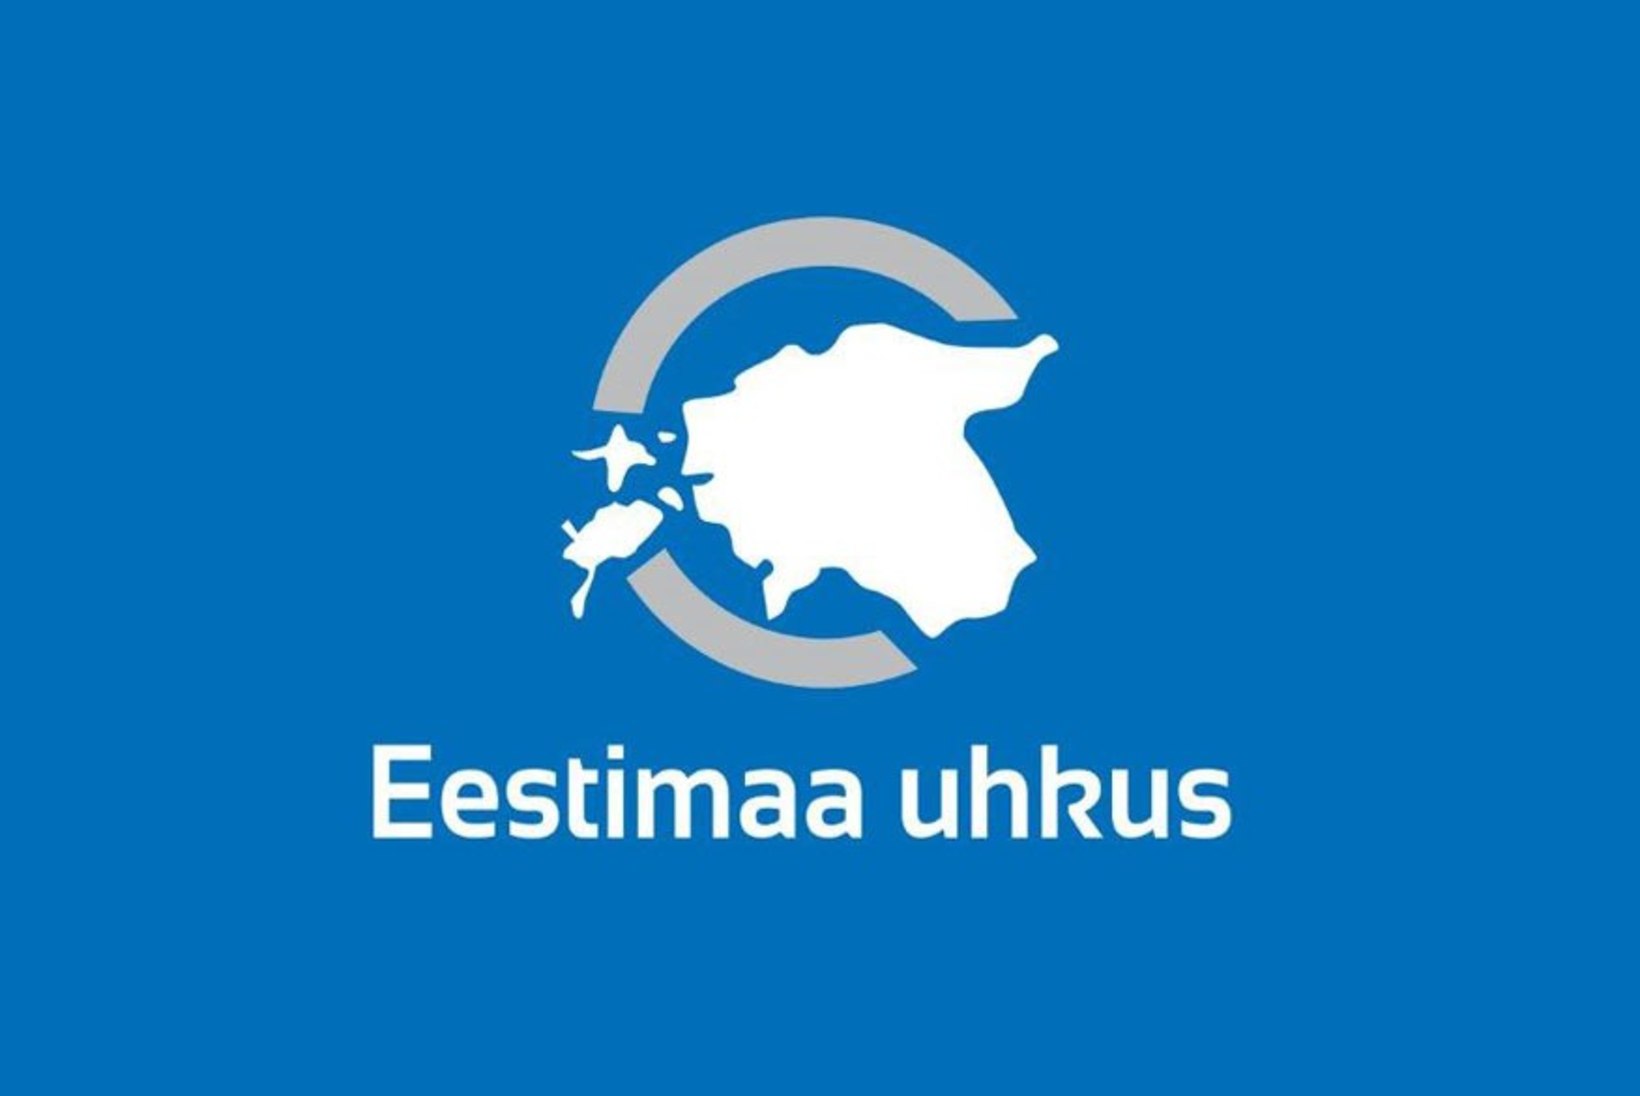 TV3: "Eestimaa uhkus" kutsub kangelastest teada andma!